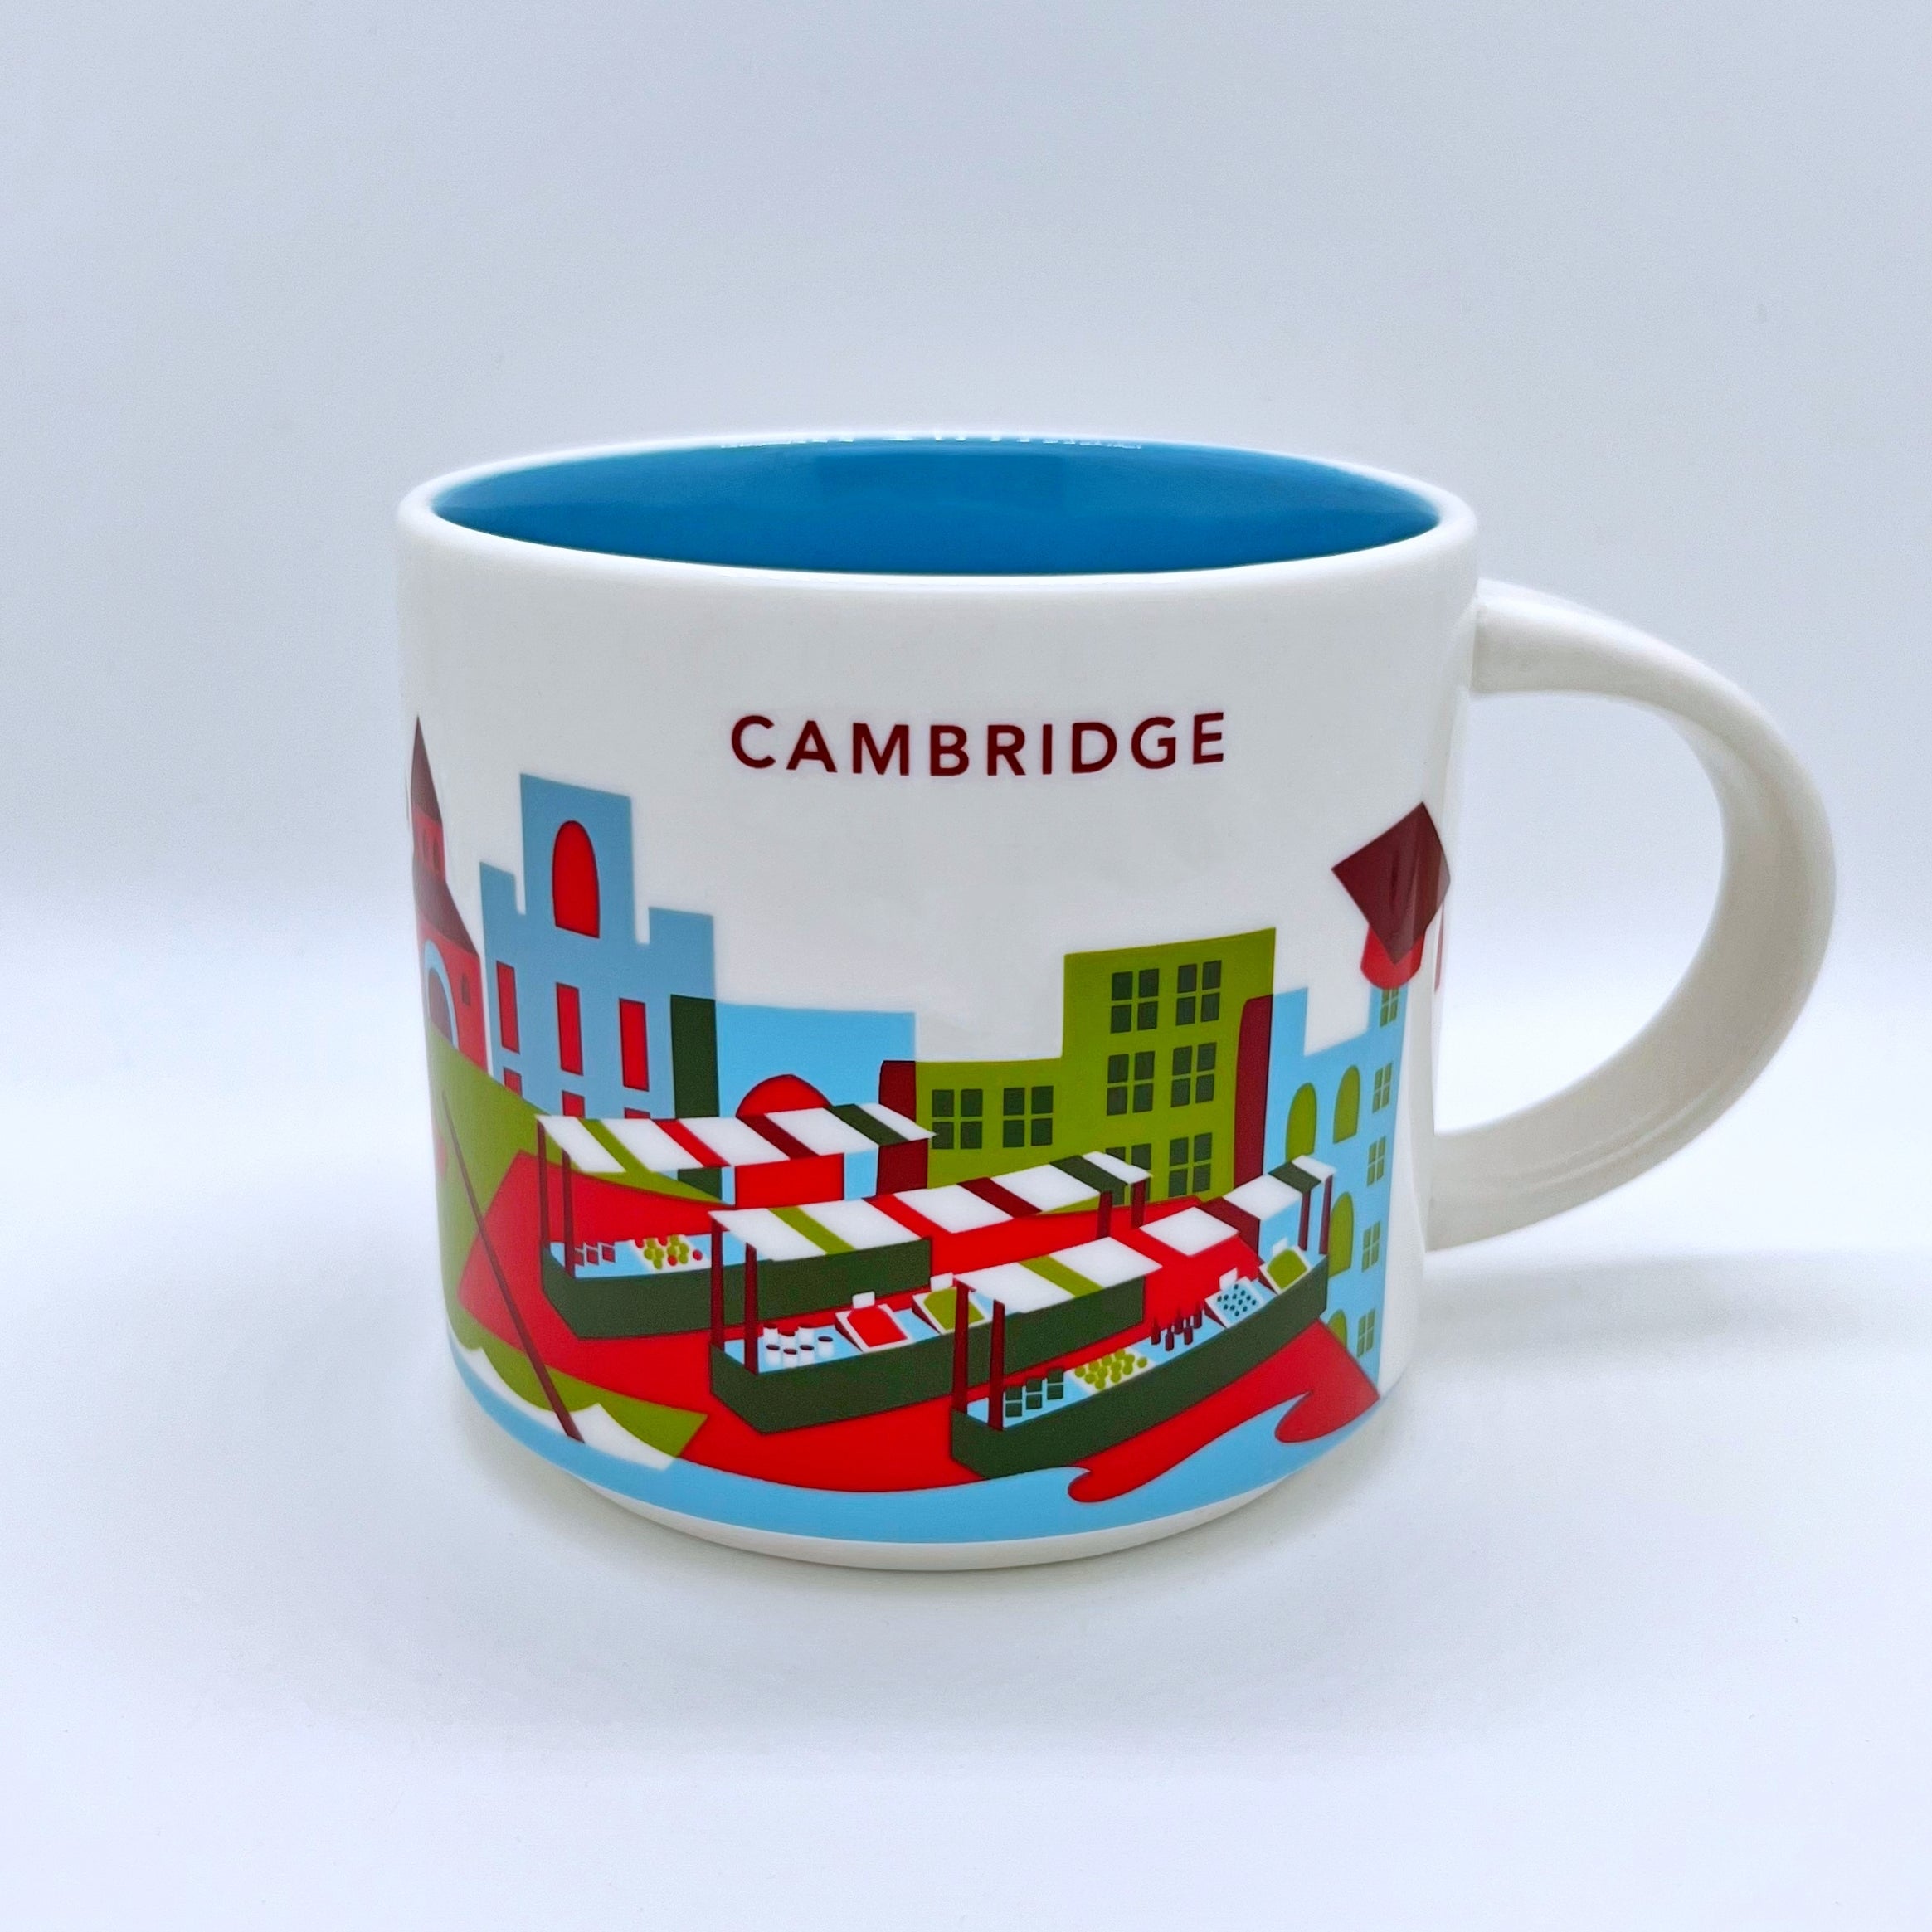 Kaffee Tee und Cappuccino Tasse von Starbucks mit gemalten Bildern aus der Stadt Cambridge 